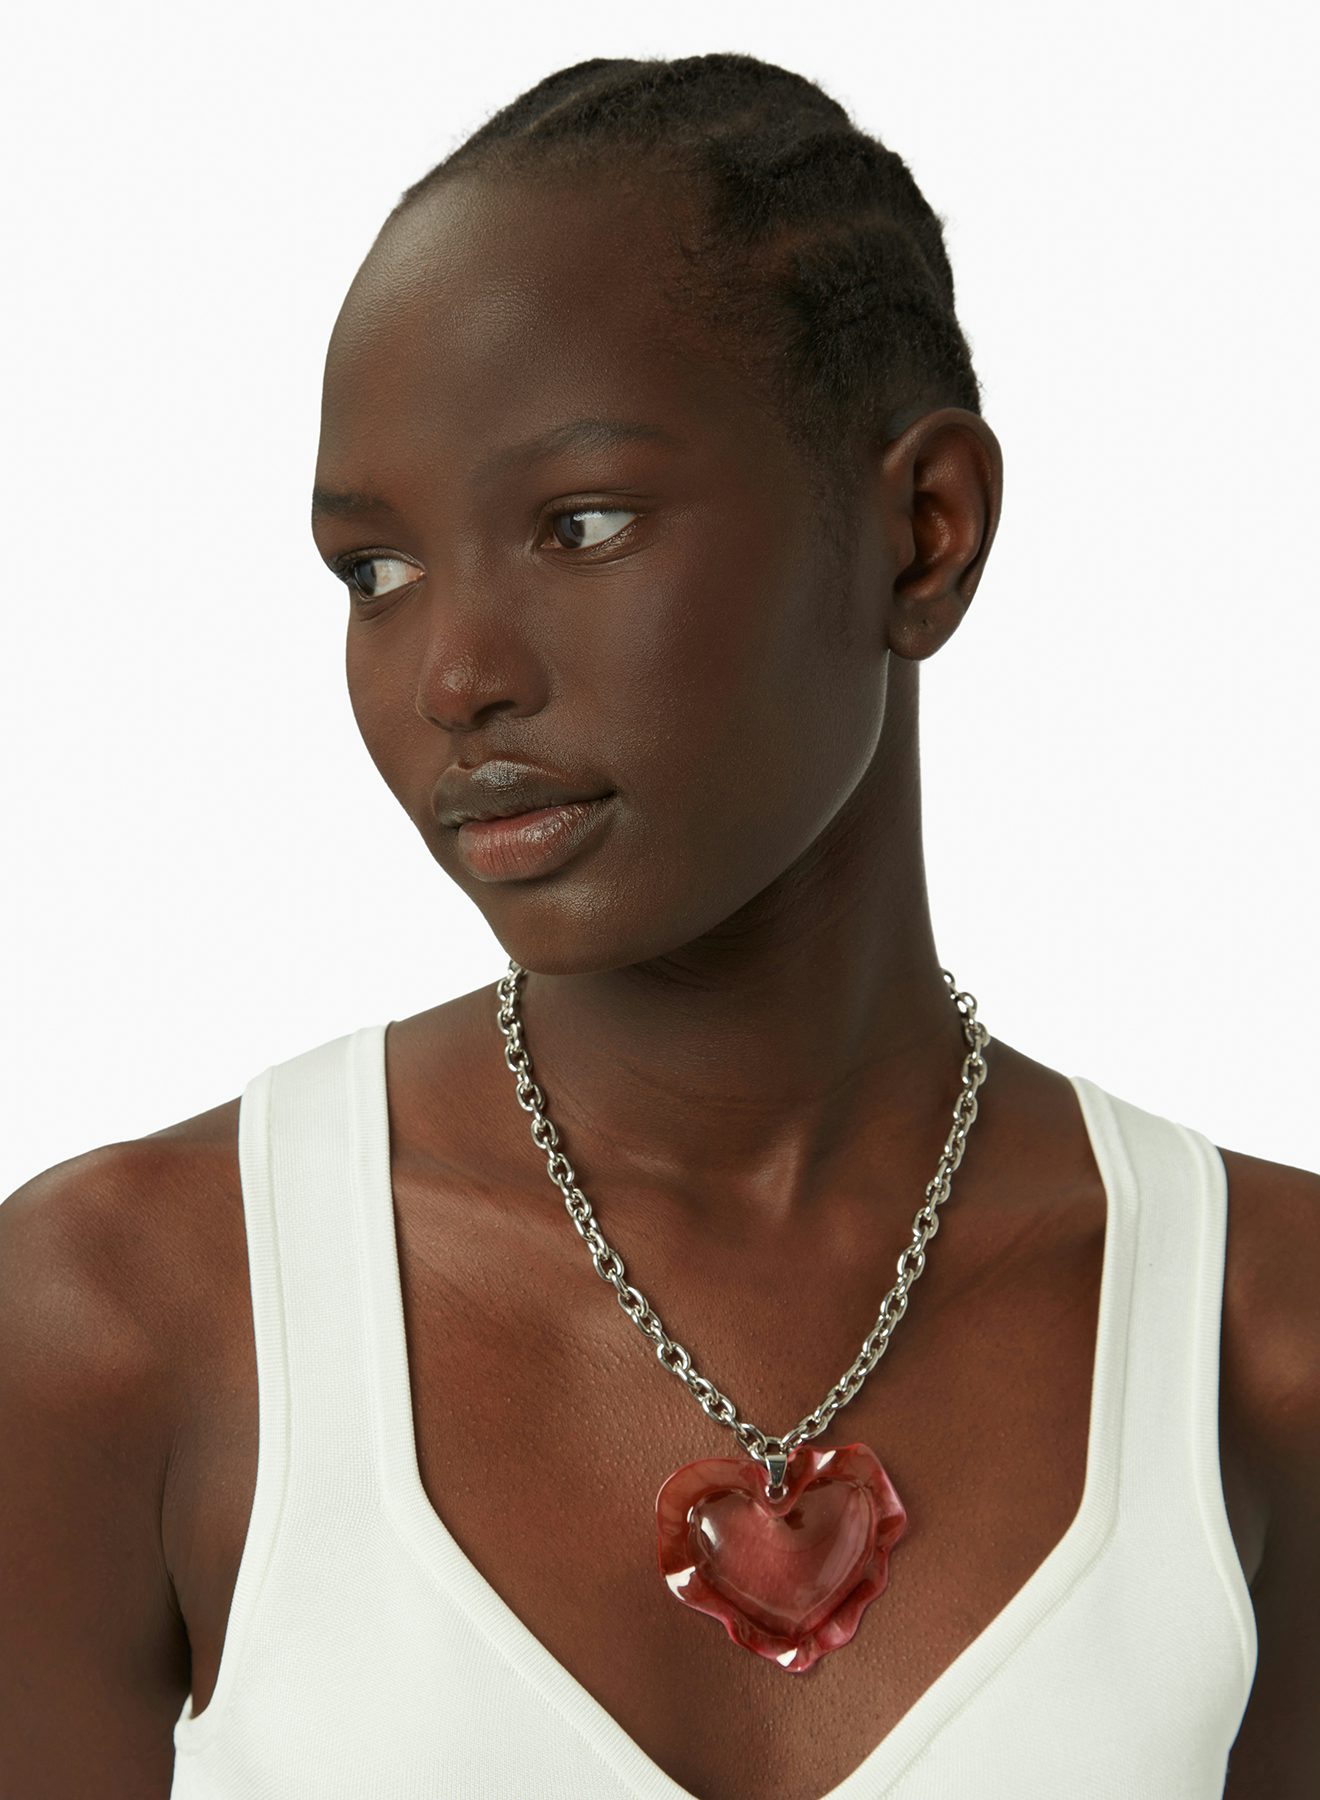 Cushion heart necklace in pink - Nina Ricci